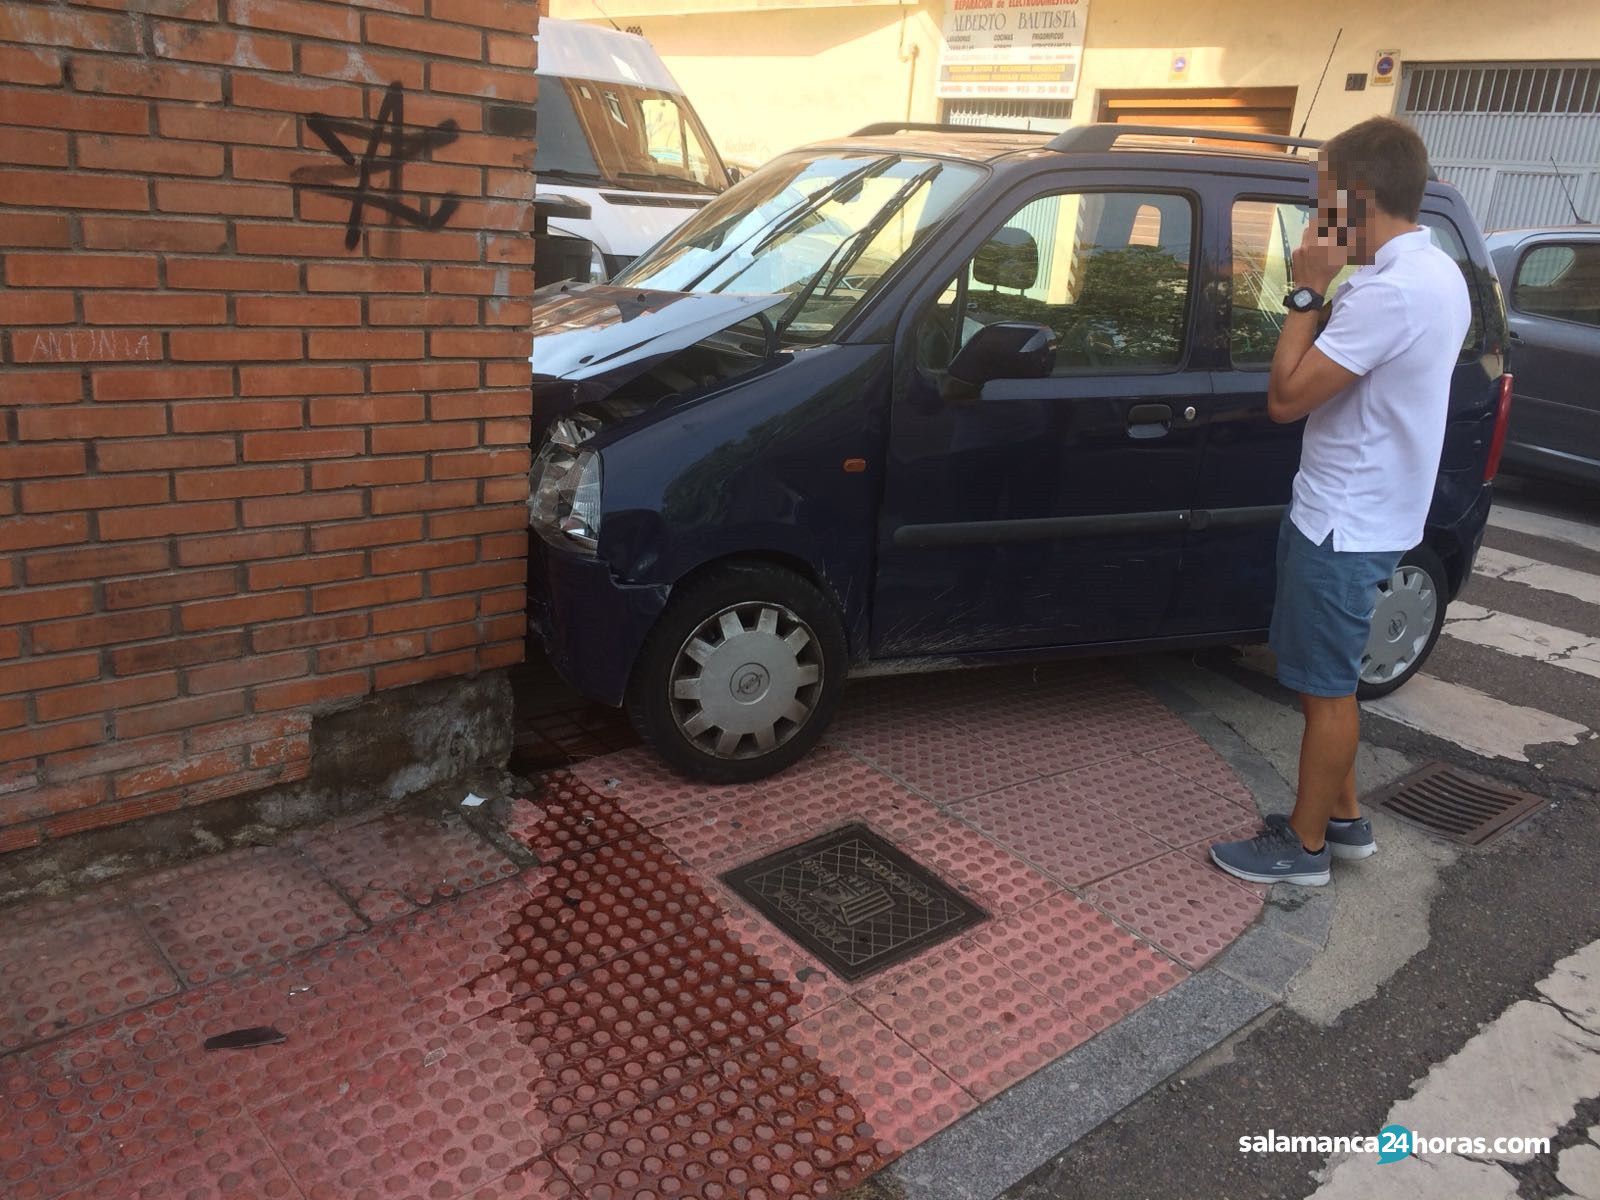  Accidente en la calle Espronceda (4) 